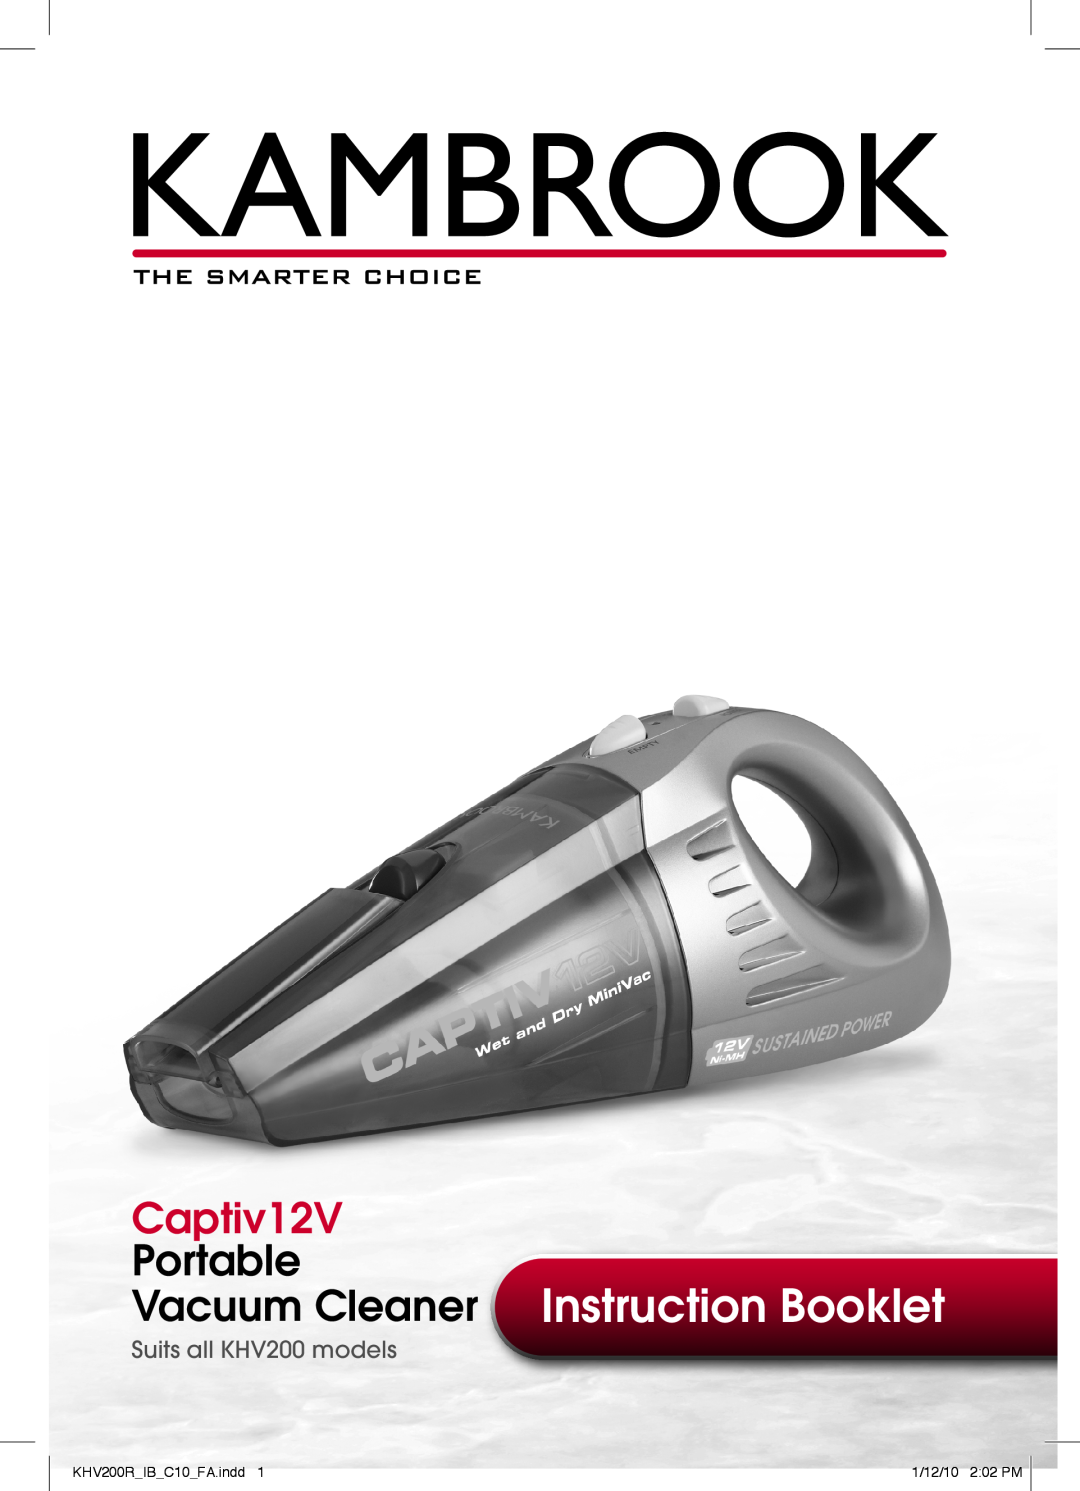 Kambrook manual Vacuum Cleaner Instruction Booklet, Captiv12V, Portable, Suits all KHV200 models, 1/12/10 2 02 PM 